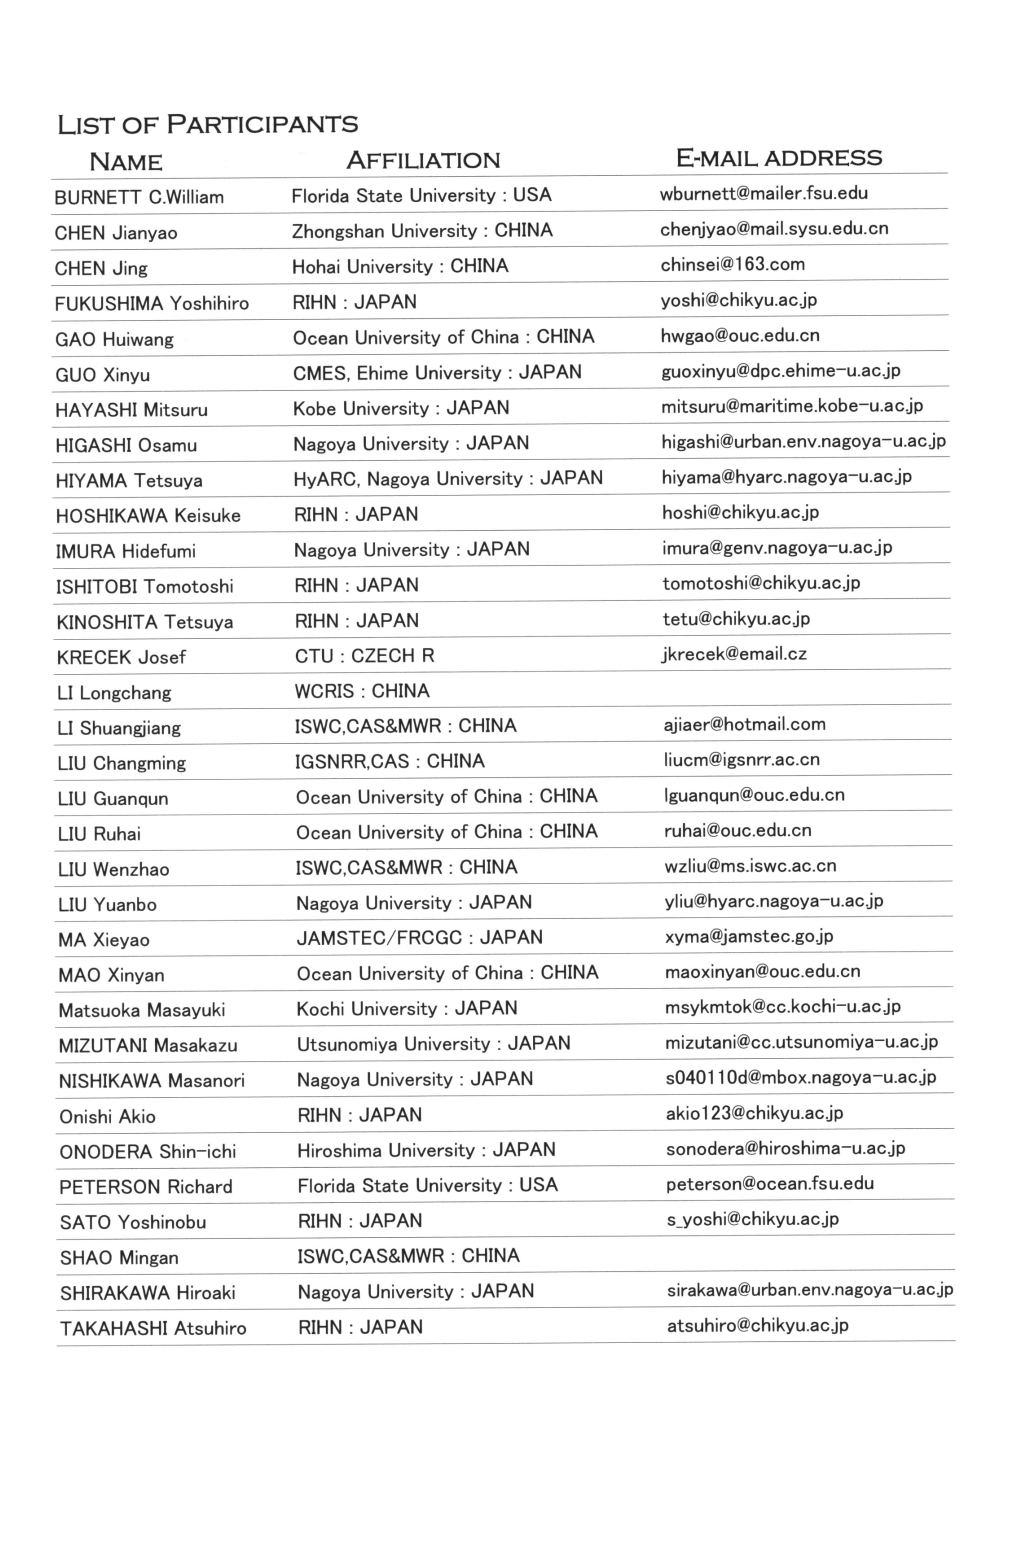 List of Participants Affiliation